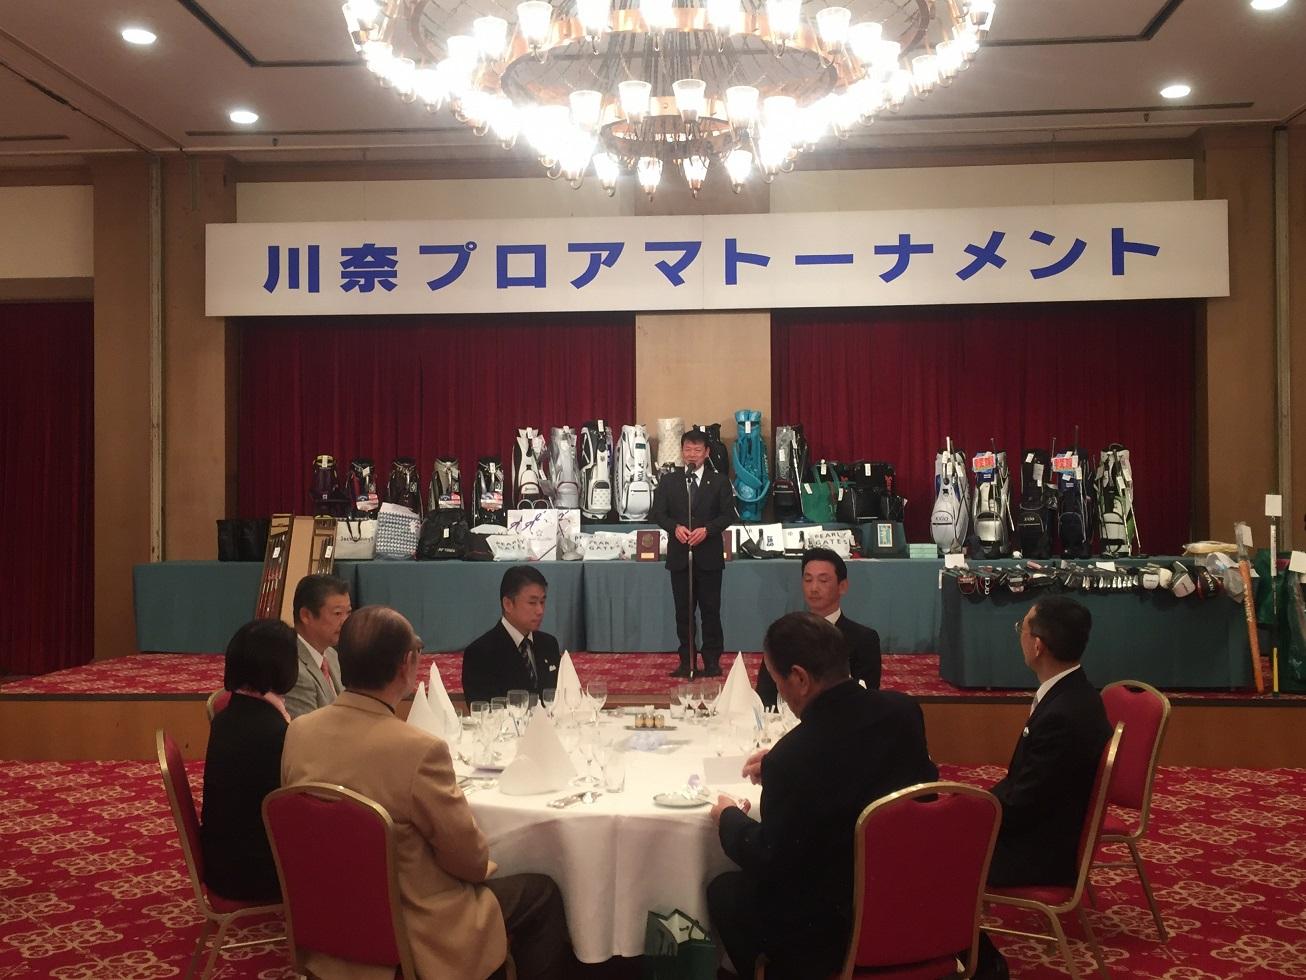 川奈ホテルにて開催された川奈プロアマトーナメントの表彰式に出席した伊東市長の写真